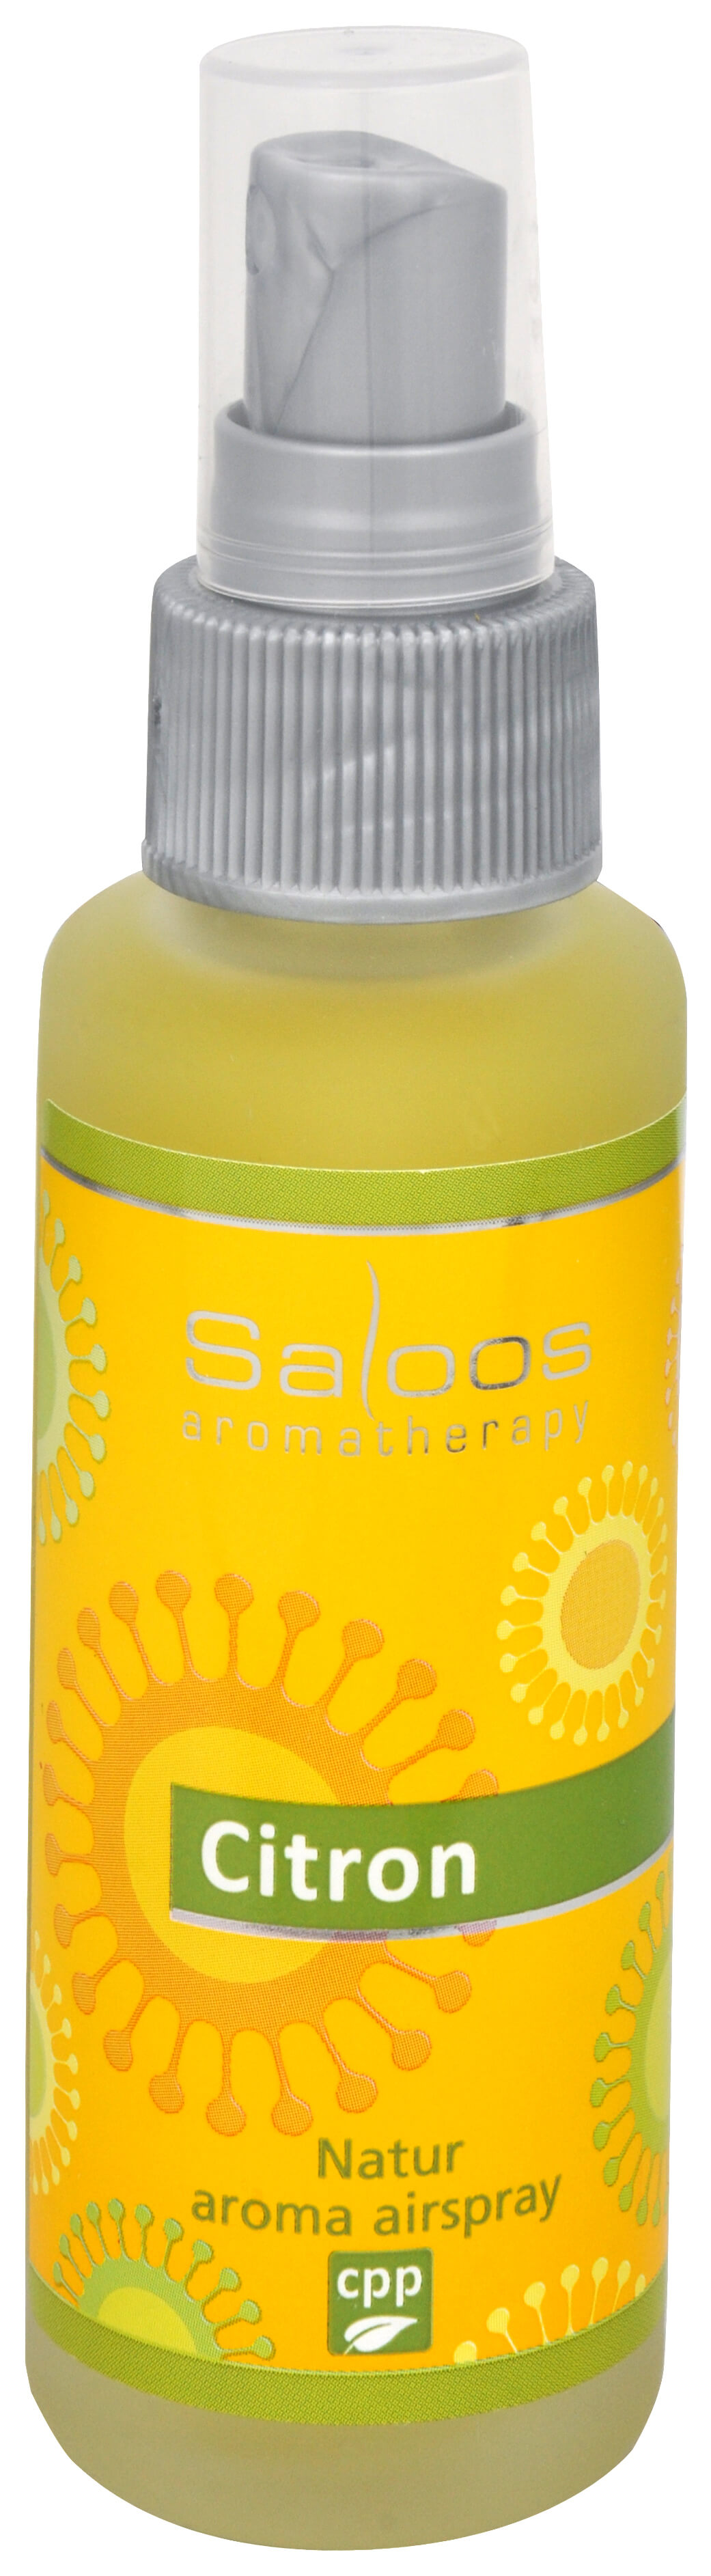 Zobrazit detail výrobku Saloos Natur aroma airspray - Citron (přírodní osvěžovač vzduchu) 50 ml